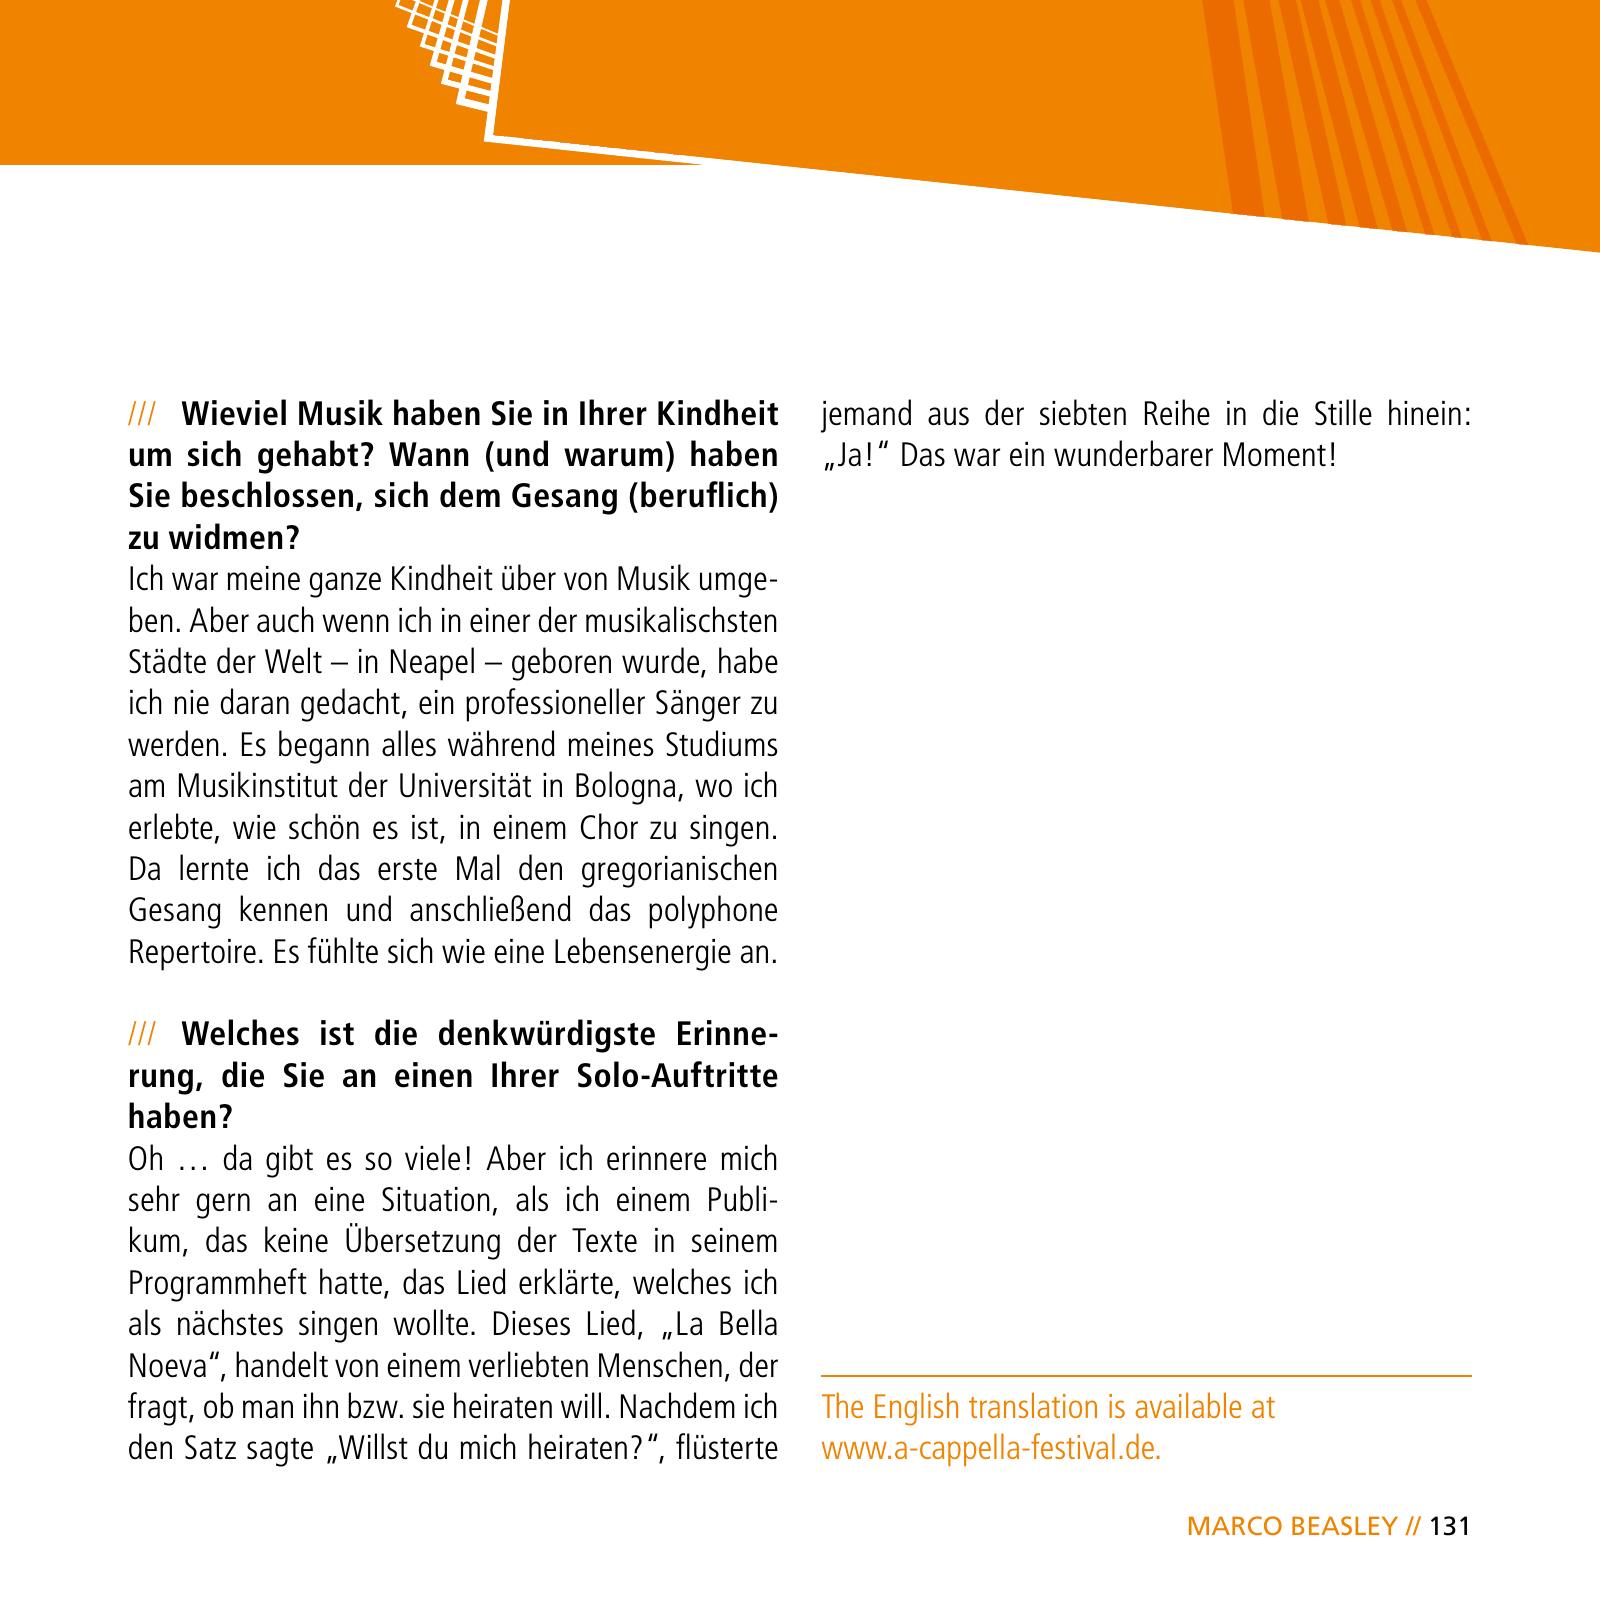 Vorschau E-Paper Festival a cappella 2015 Seite 133